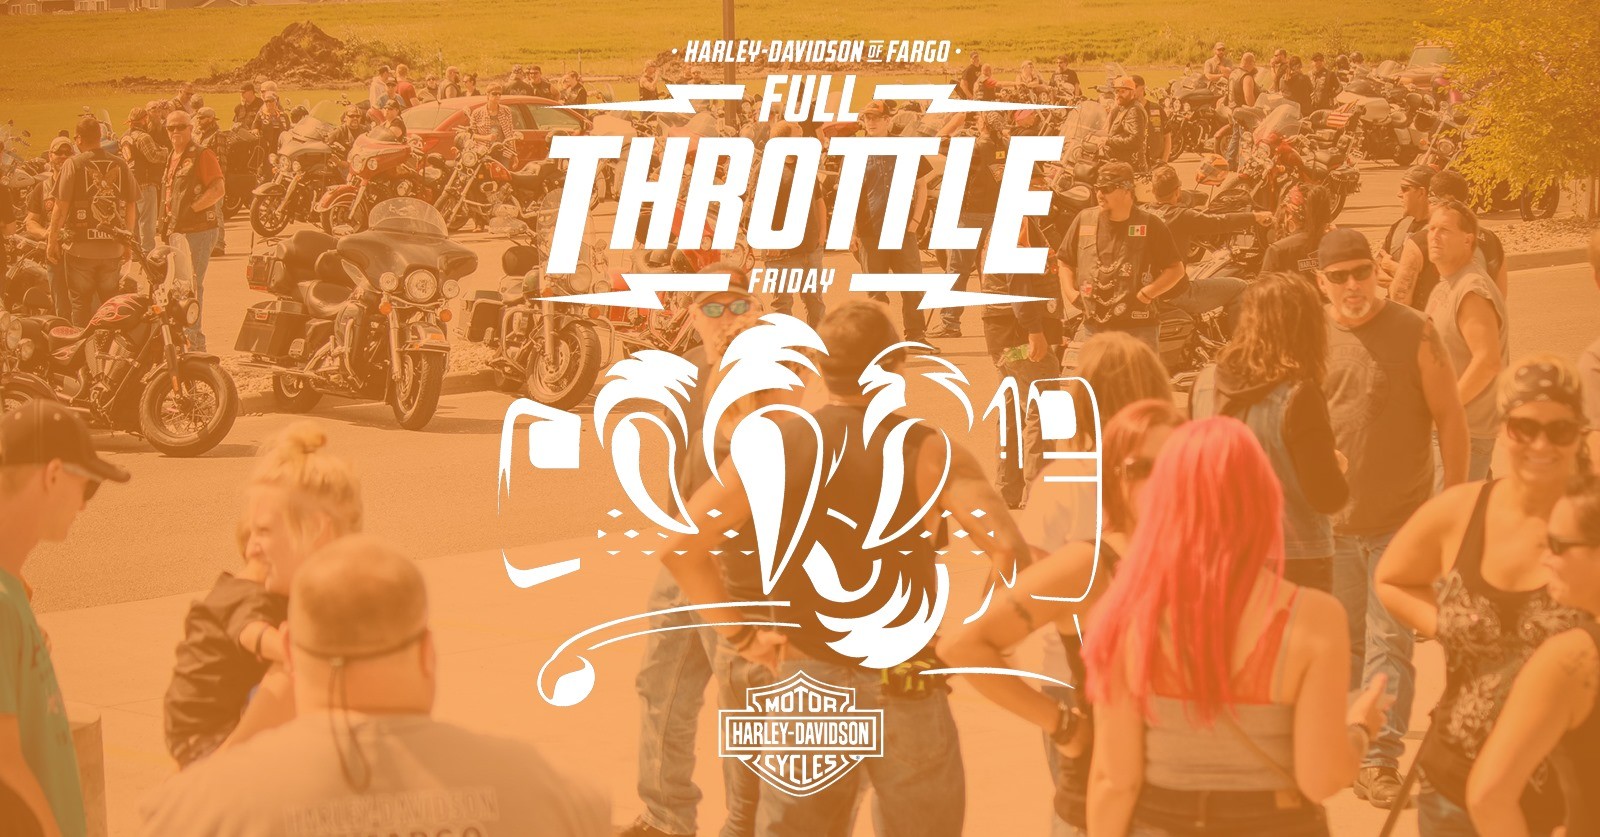 Harley Davidson of Fargo Full Throttle Friday